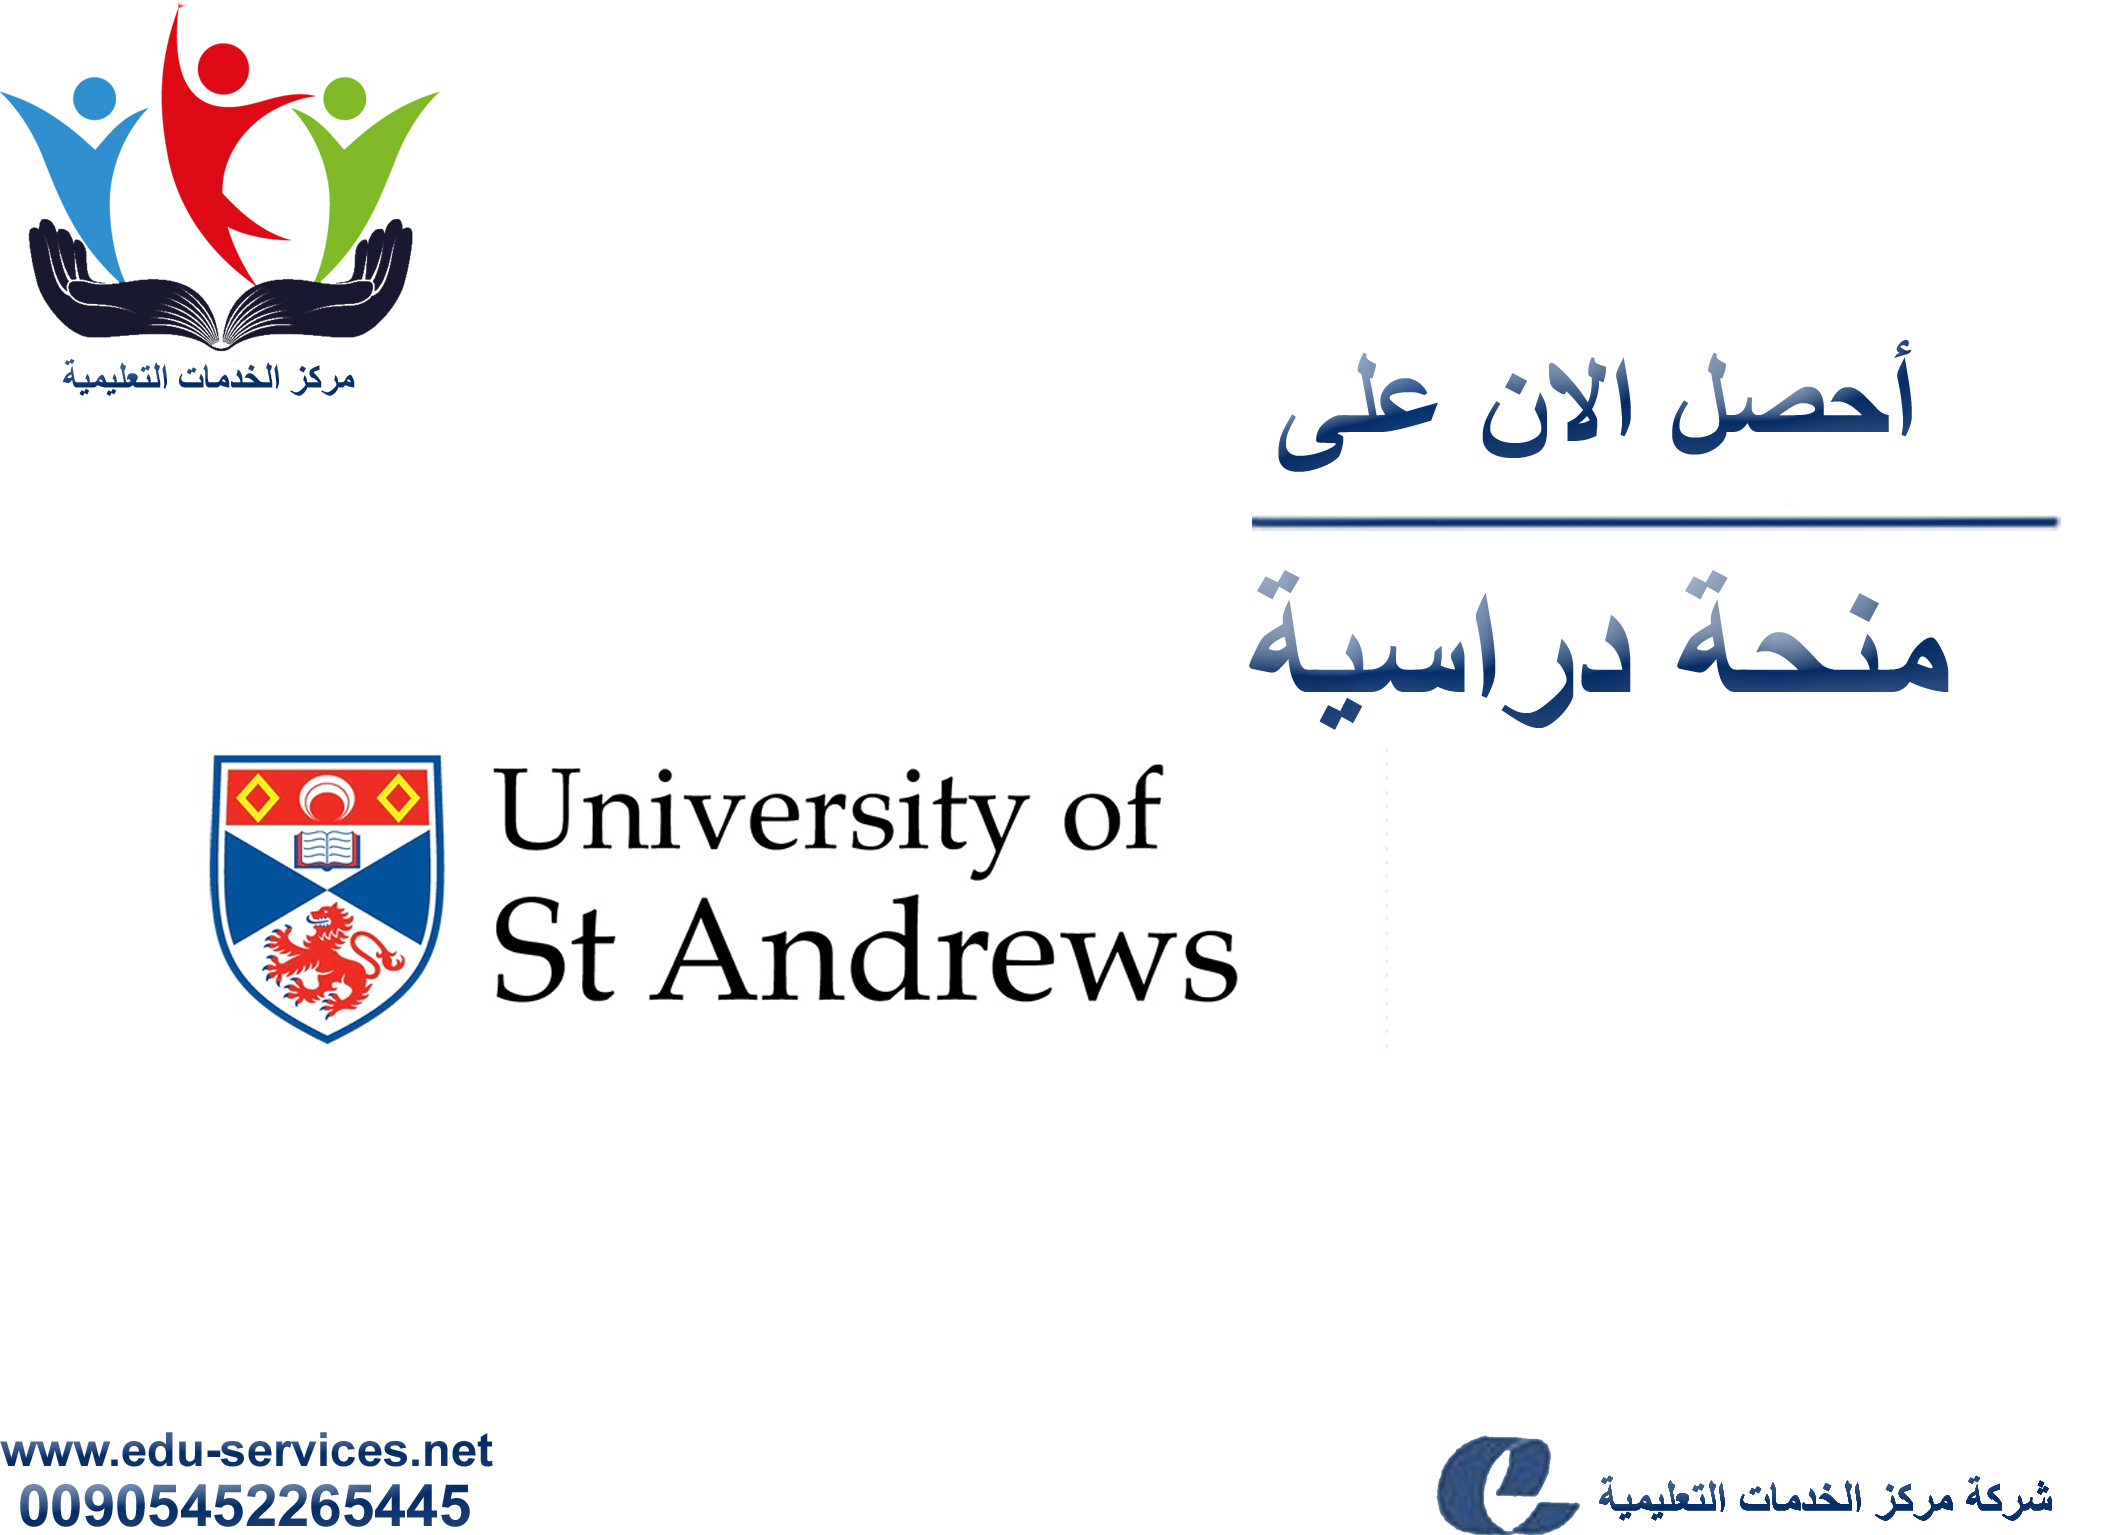 منح دراسية لدرجة الدكتوراه من StAndrews في بريطانيا للعام 2018-2019